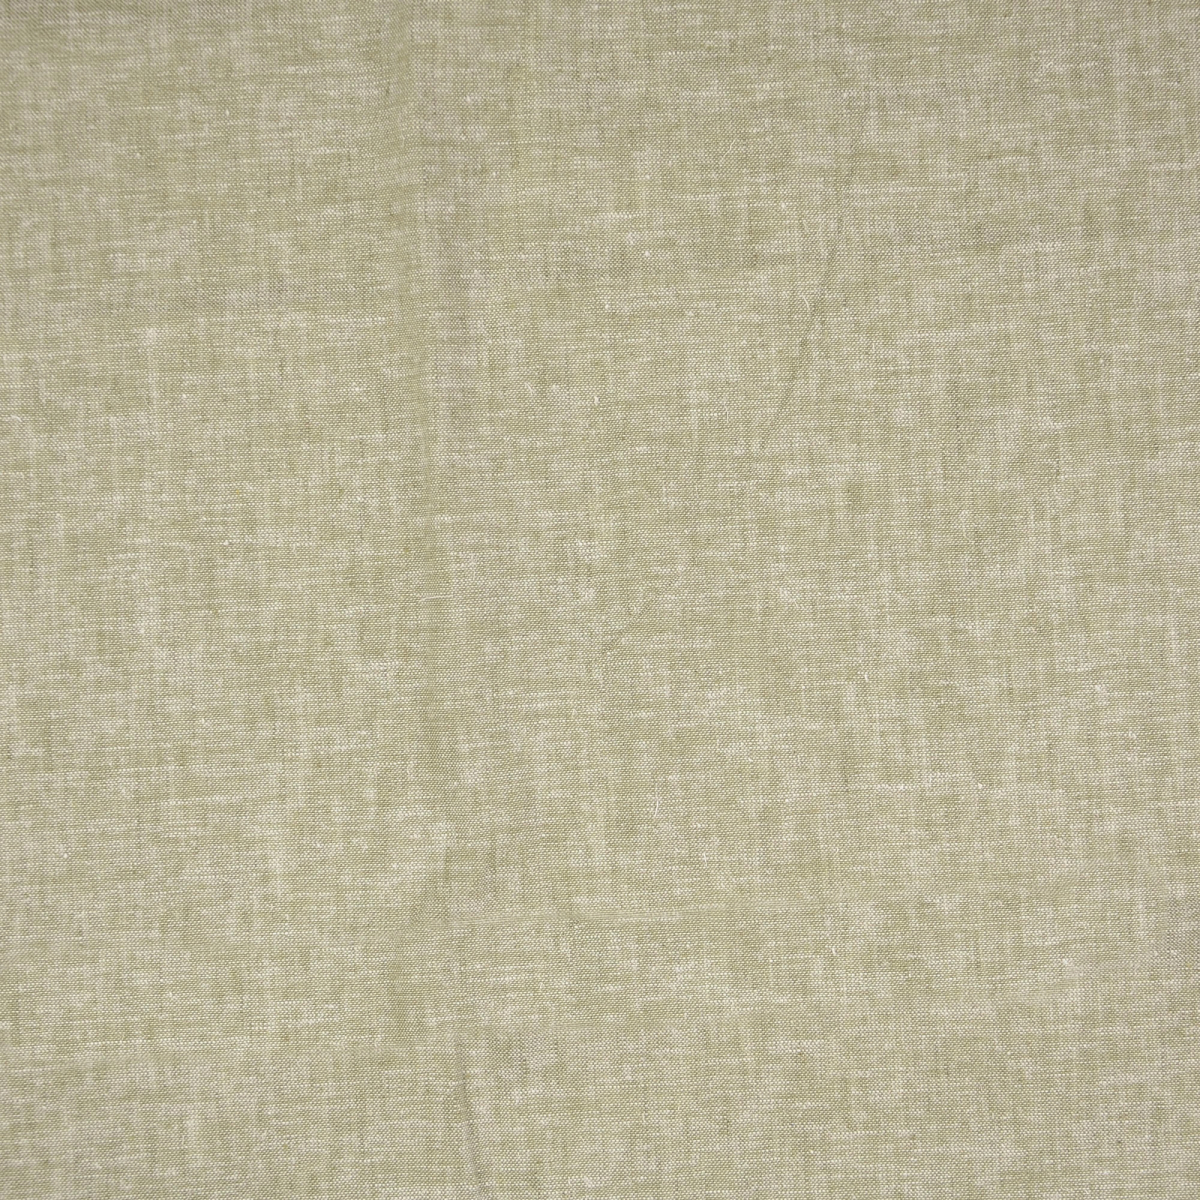 Tissu texturé de sensation de lin // 18x45 BTHY, par la demi-cour NOS tan  tissé grossier de chameau, brun chocolat, rose chaud, coton blanc, lin -   France